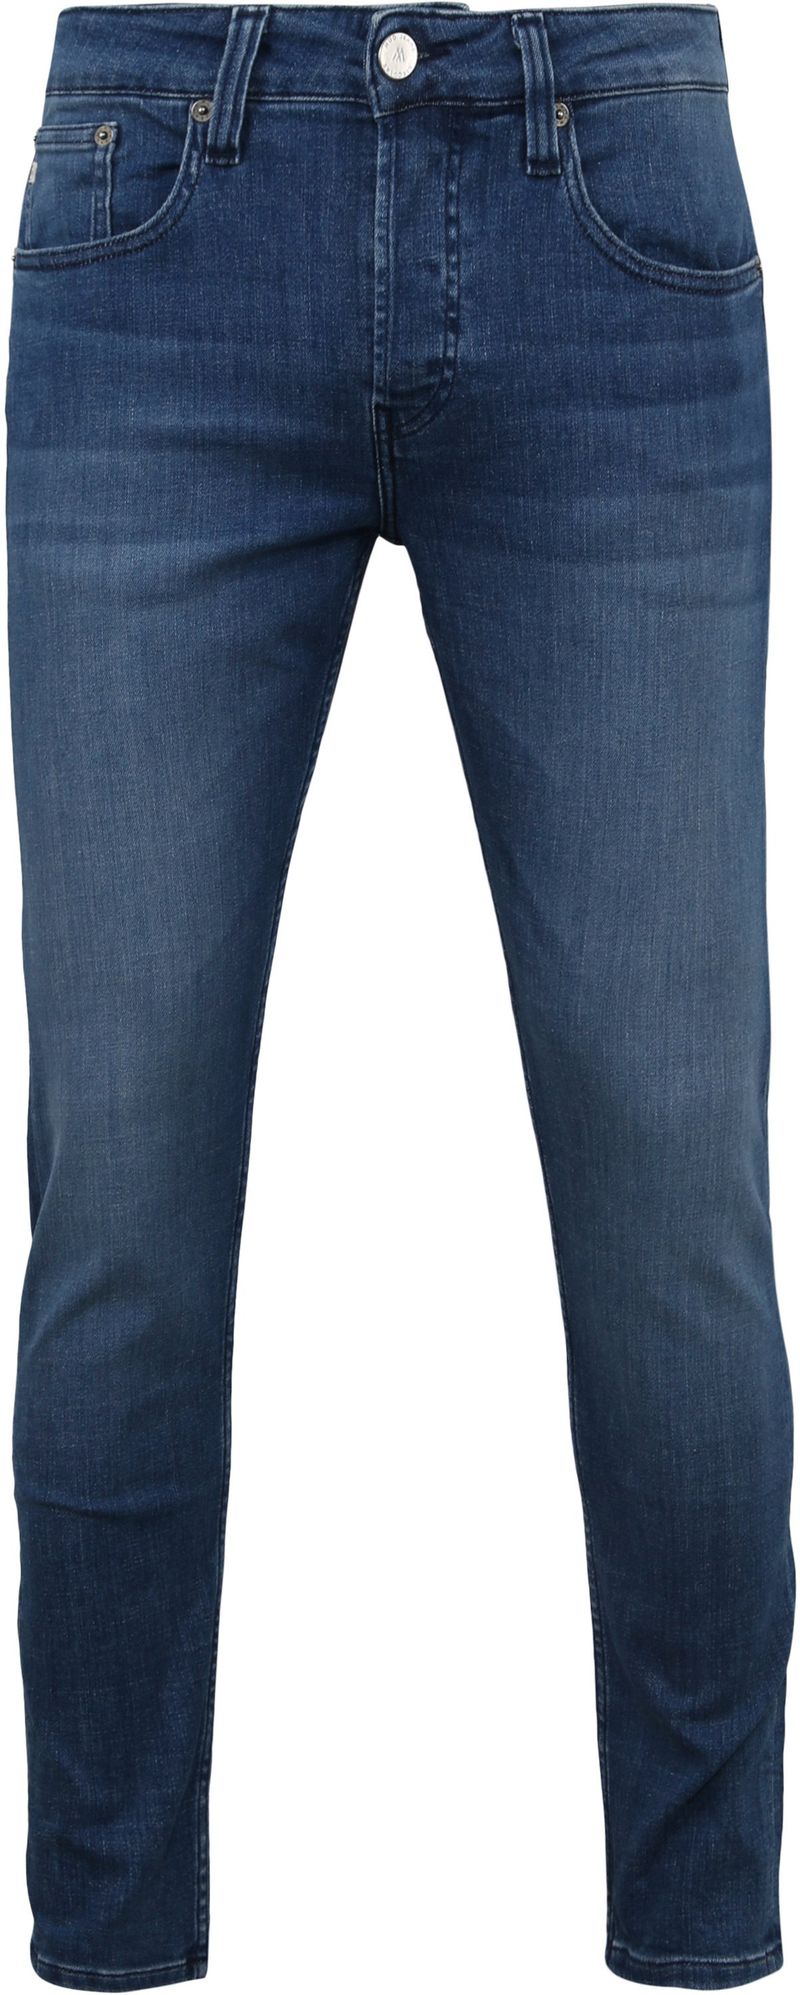 MUD Jeans Denim Slimmer Rick Blau - Größe W 31 - L 34 von MUD Jeans